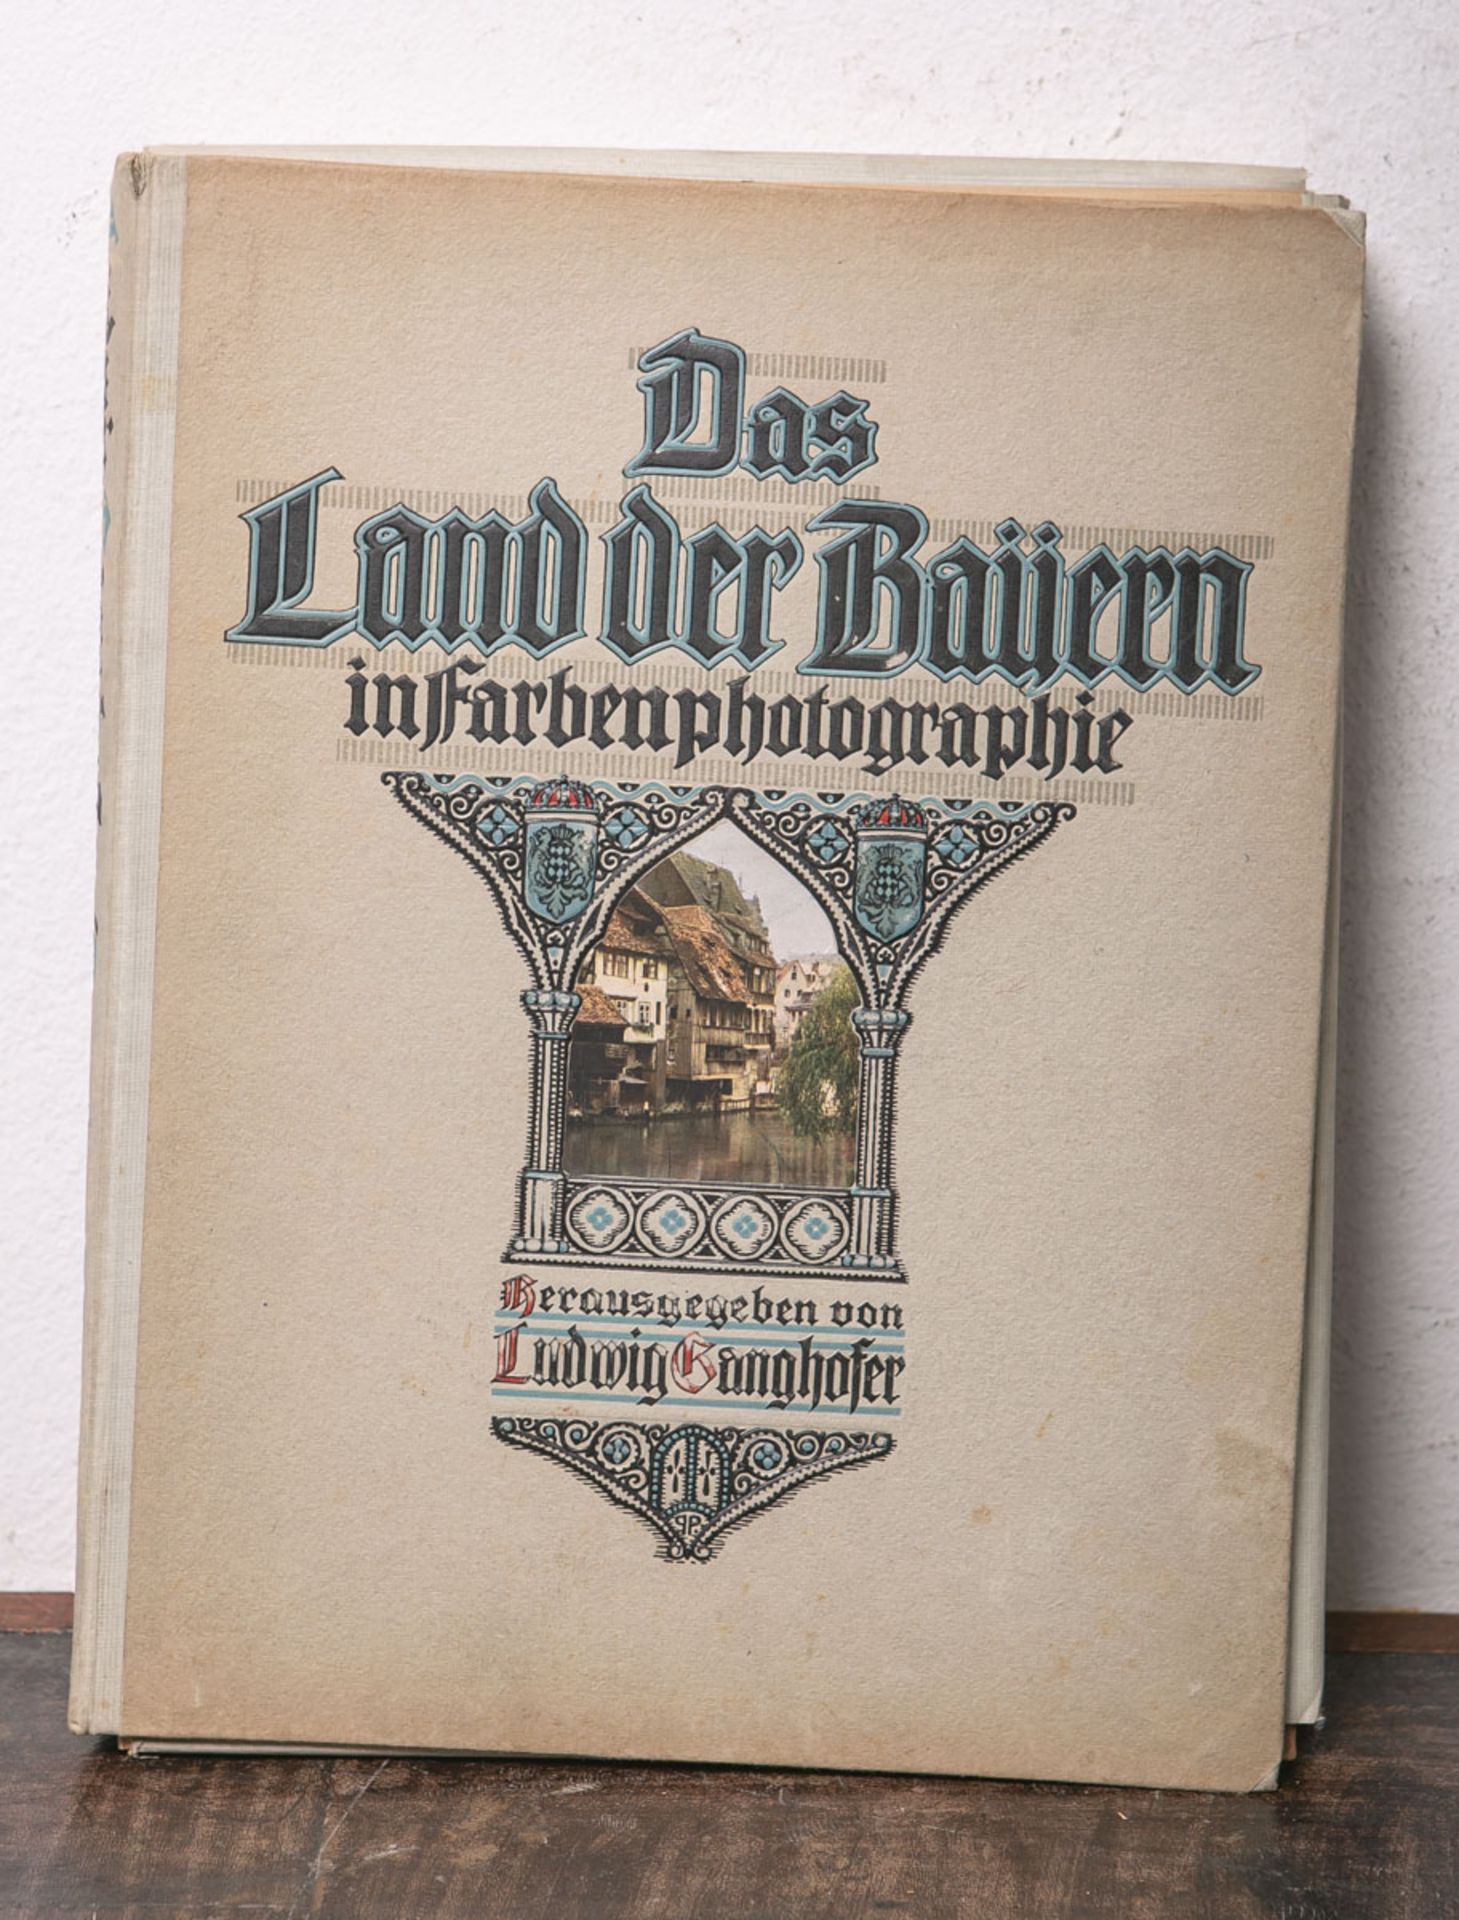 Ganghofer, Ludwig (Hrsg.), "Das Land